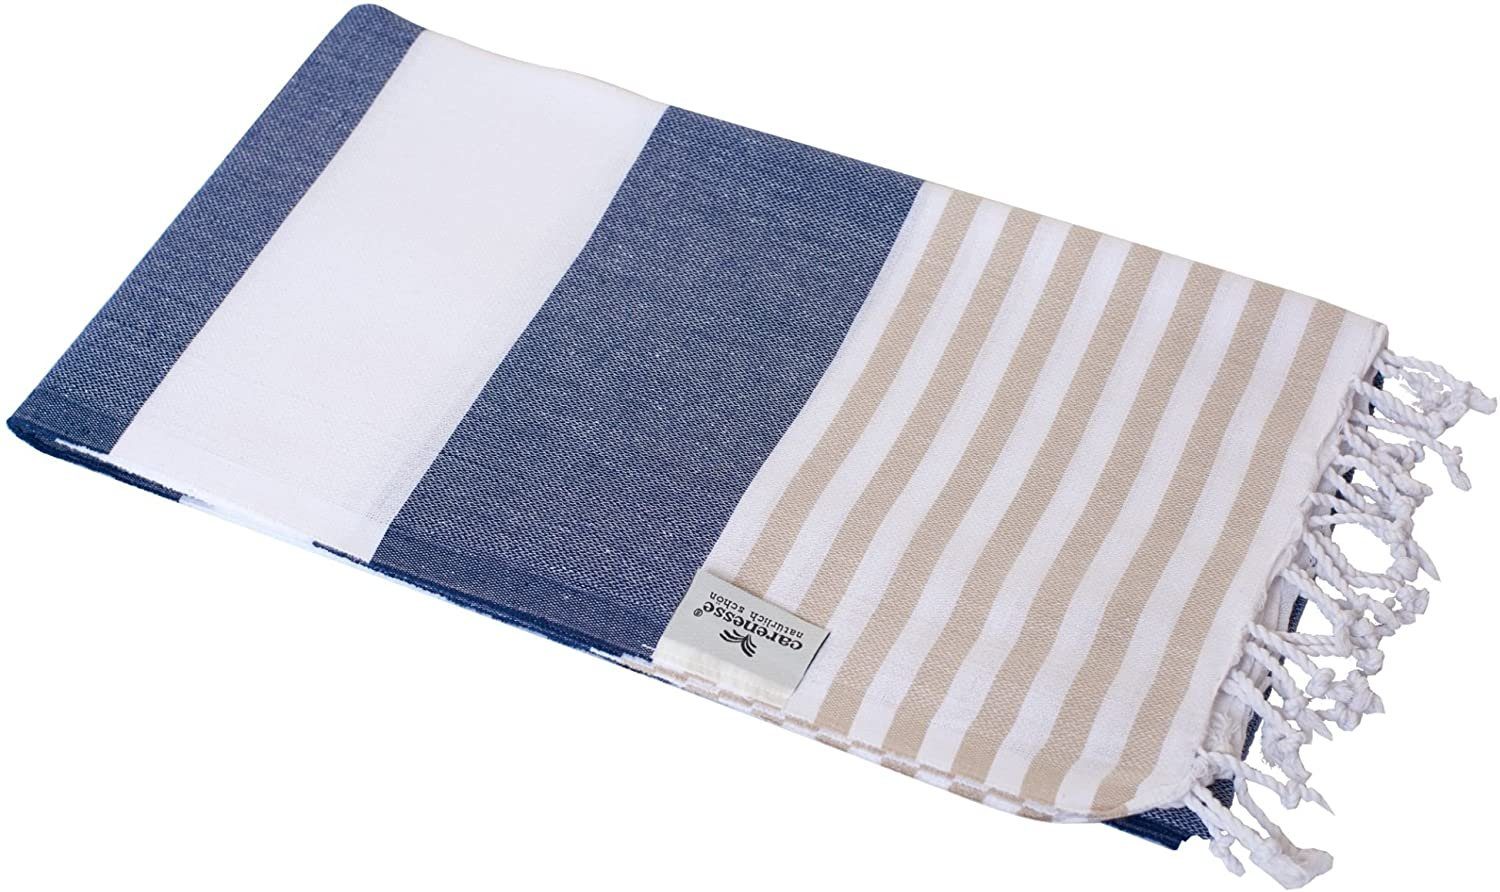 Carenesse Strandtuch Hamamtuch Tommy 100 x 180 cm Hamam Handtuch Baumwolle blau weiß beige, Baumwolle, breit & saugfähig Pestemal Fouta I Saunatuch Strandtuch Camping Towel